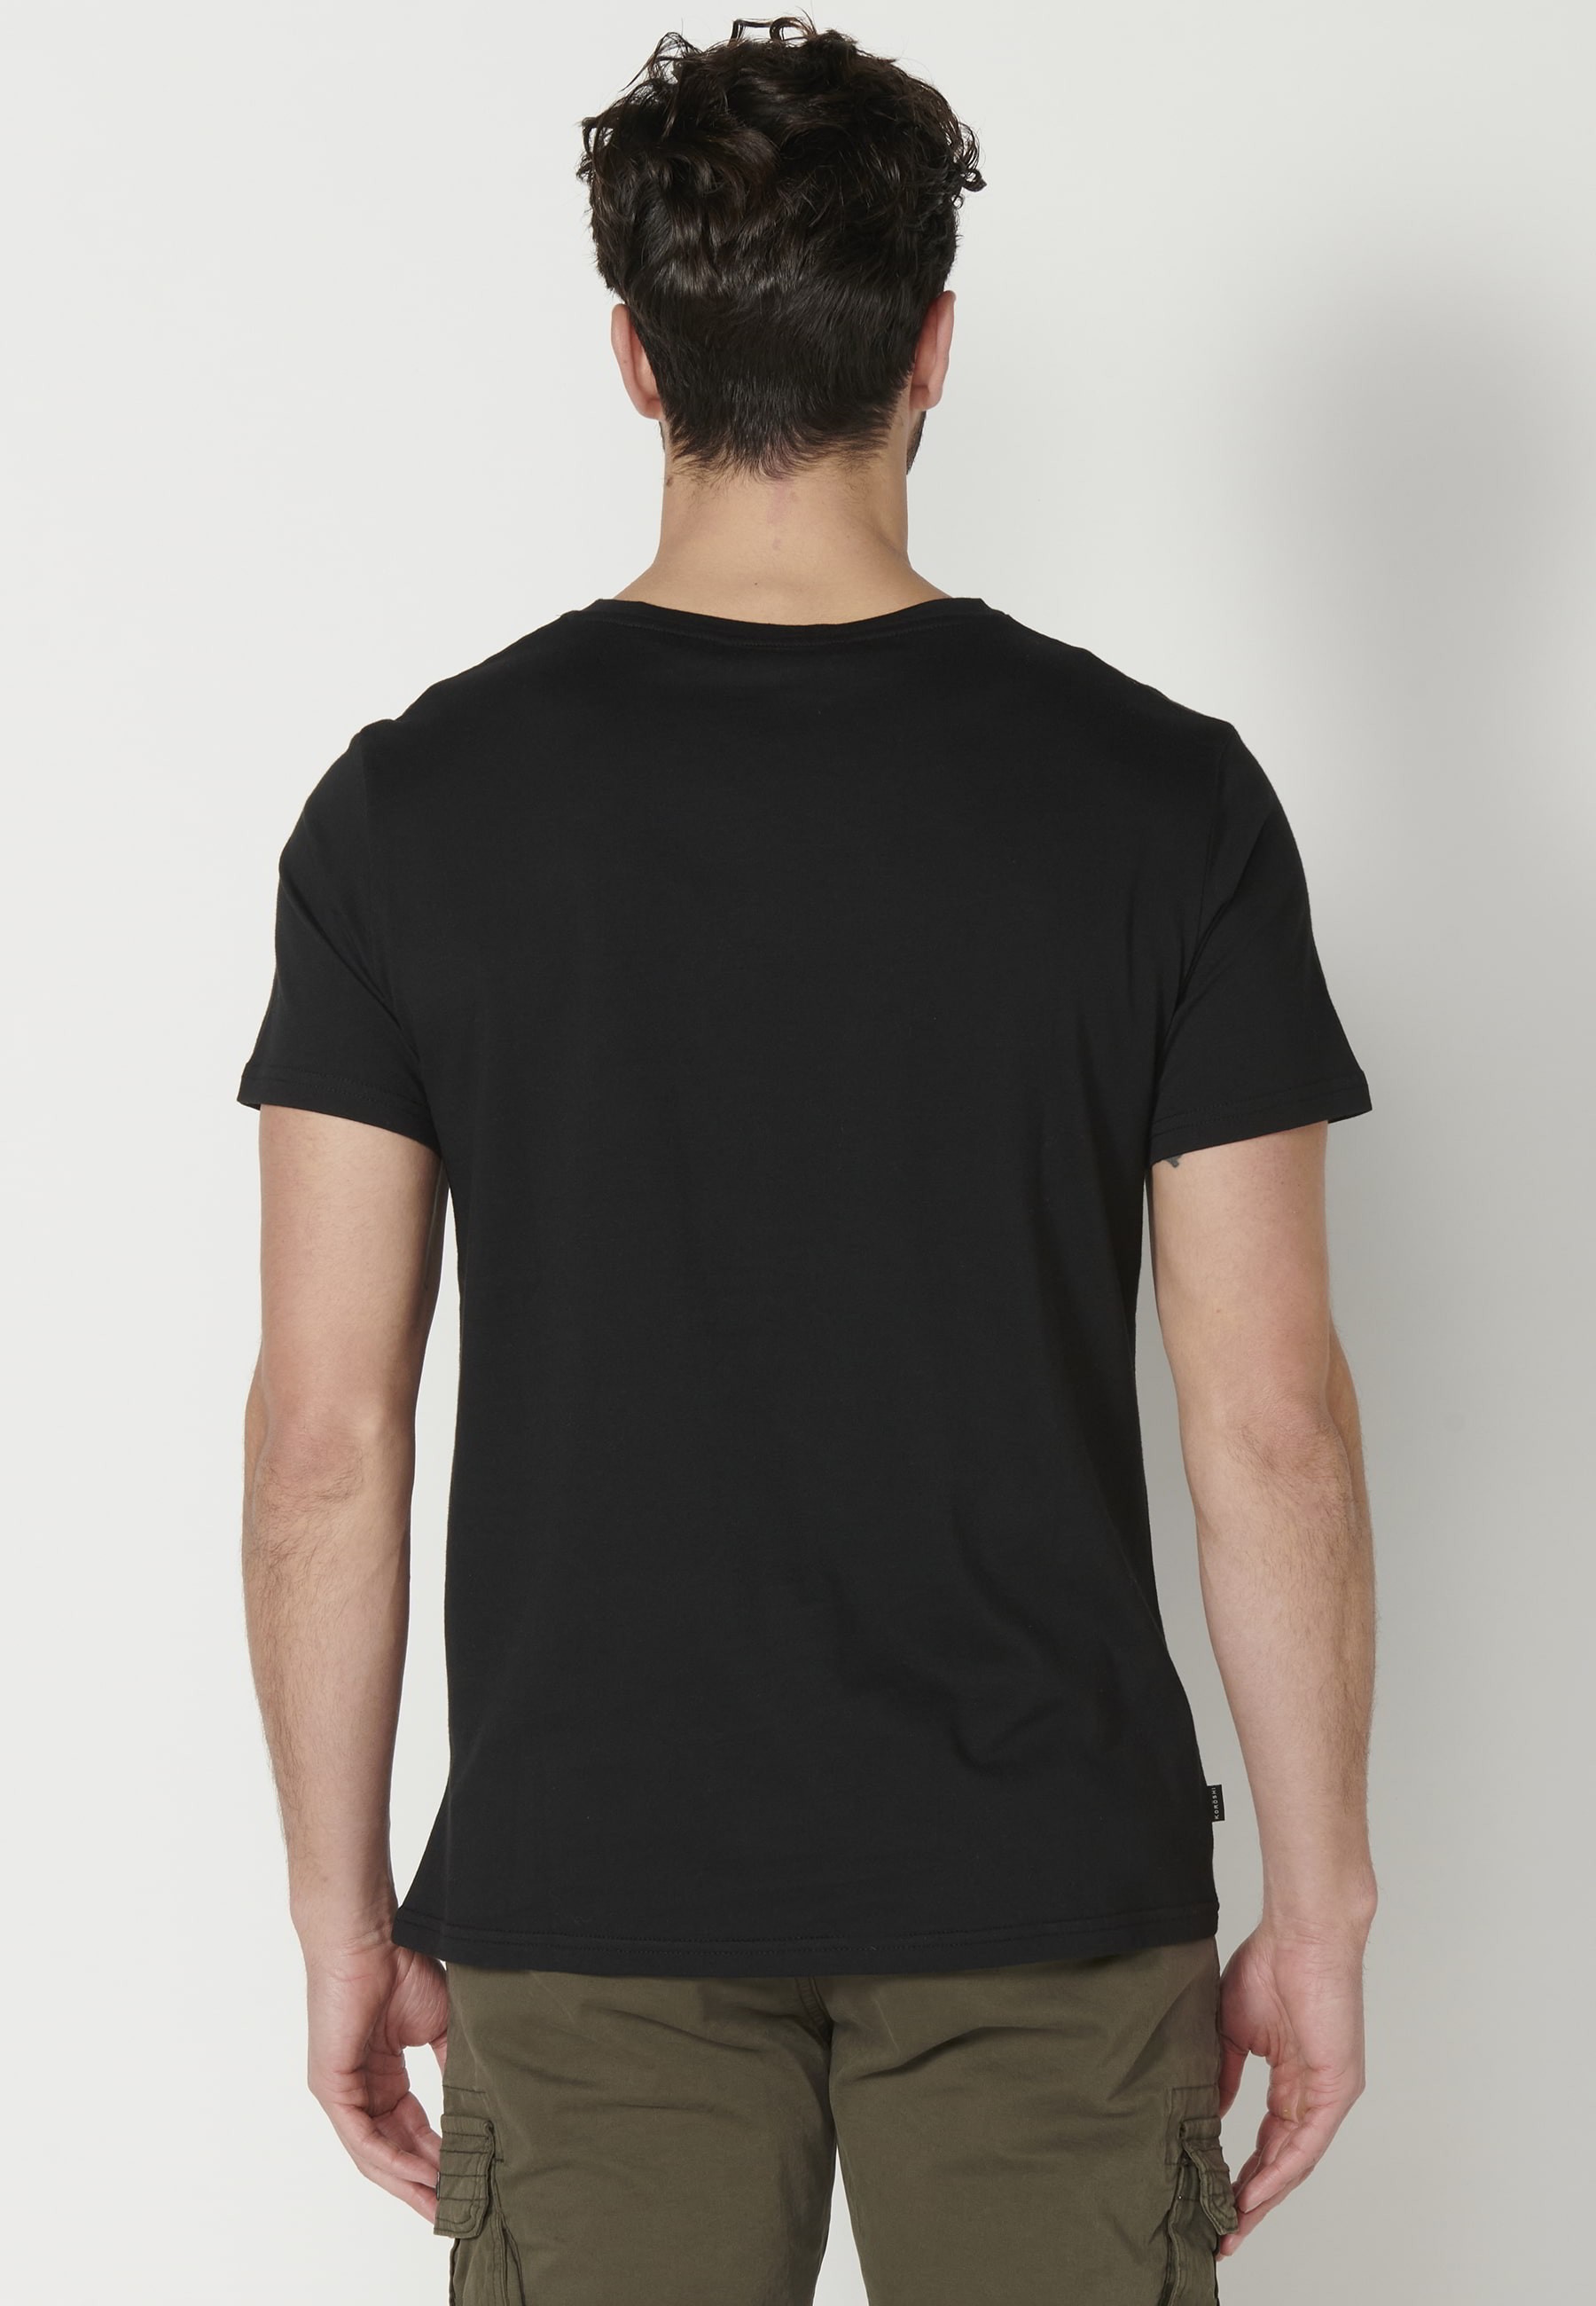 T-shirt Homme Noir À Manches Courtes En Coton Imprimé Sur Le Devant